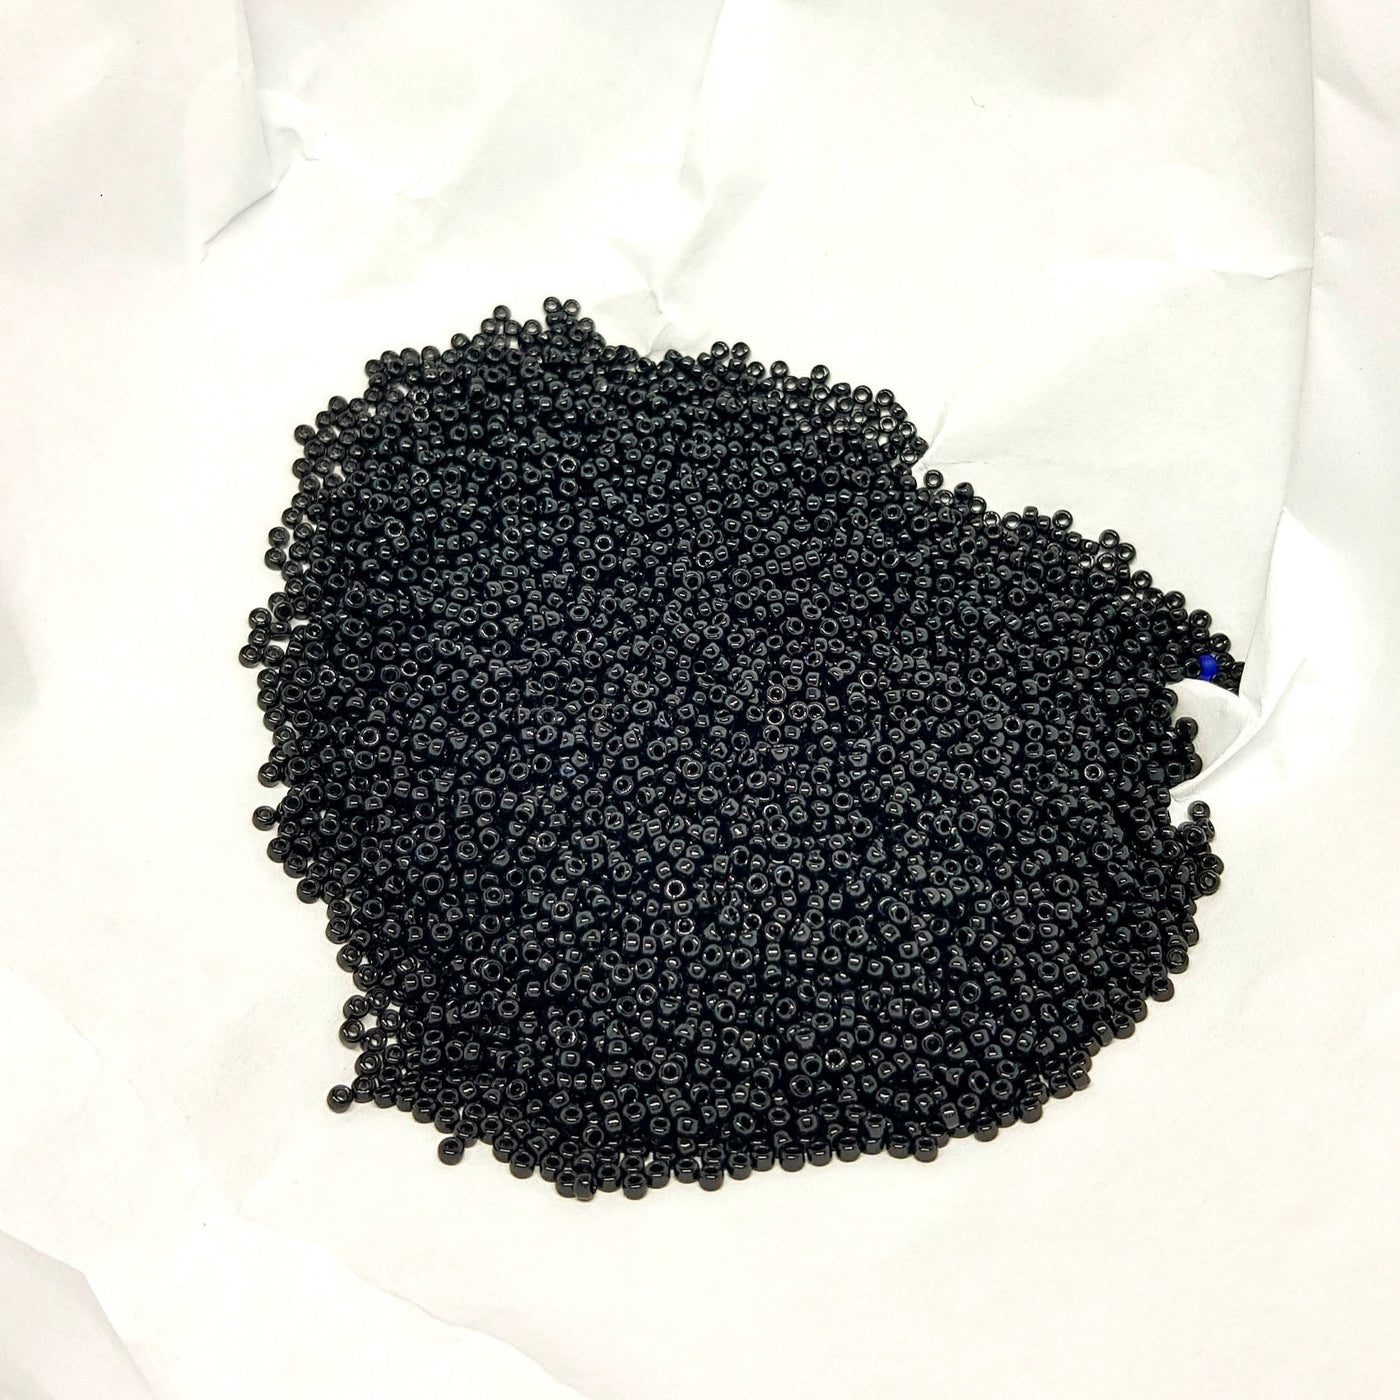 חרוזי מיוקי יפניים, גודל 15 - קטן ביותר (1.5 מ"מ) חור פנימי 0.7 מ"מ בצבע שחור